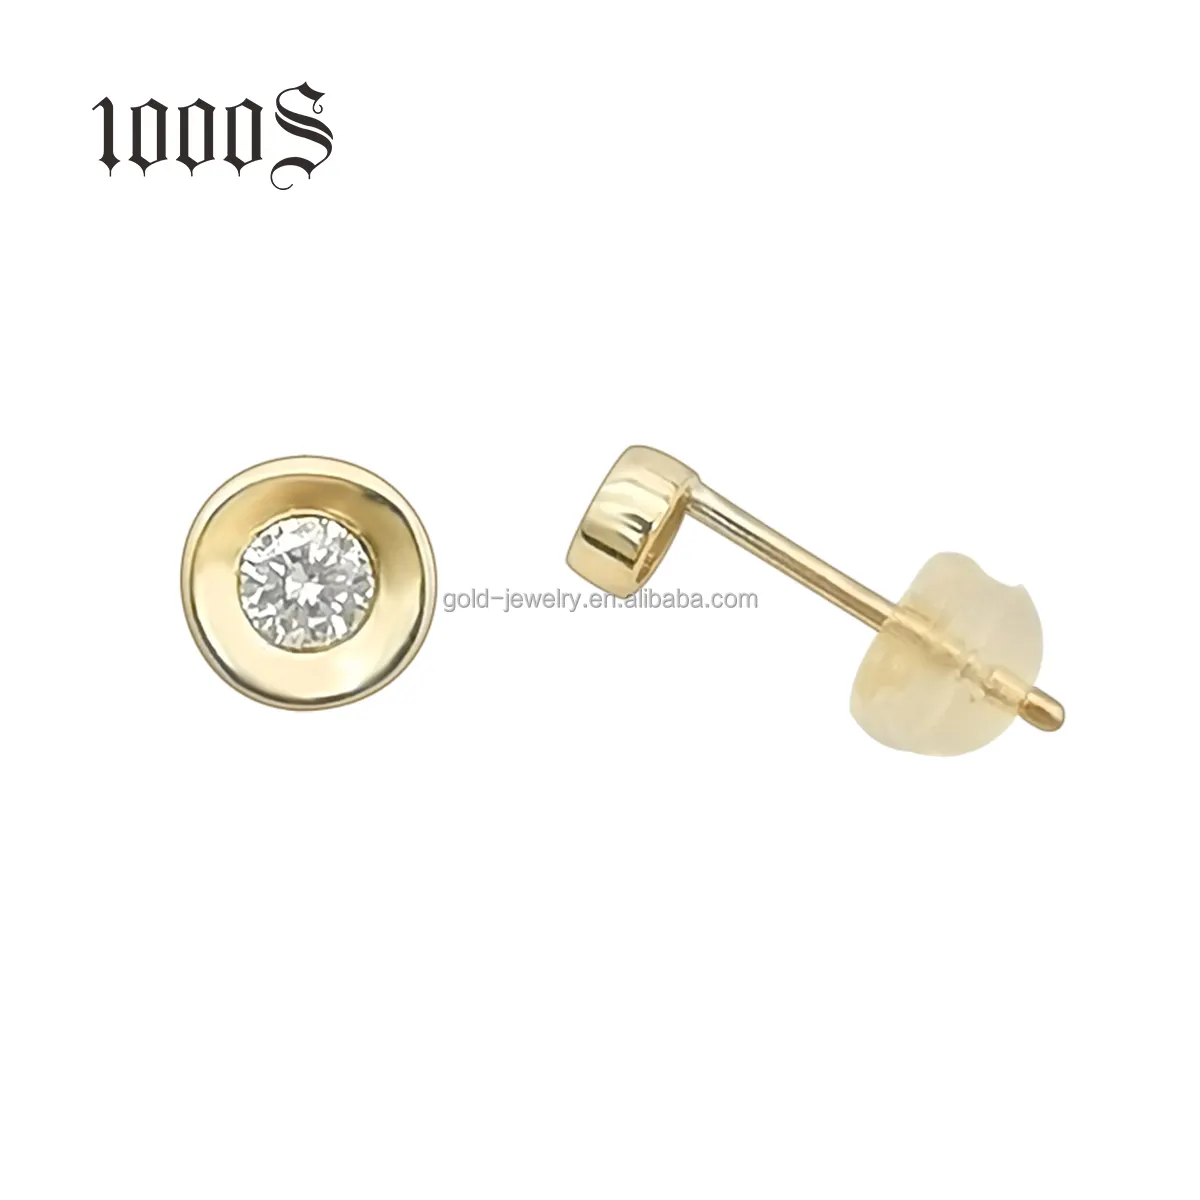 Pendientes clásicos de oro de 9 quilates con diamantes, diseño Simple, barato, 9k